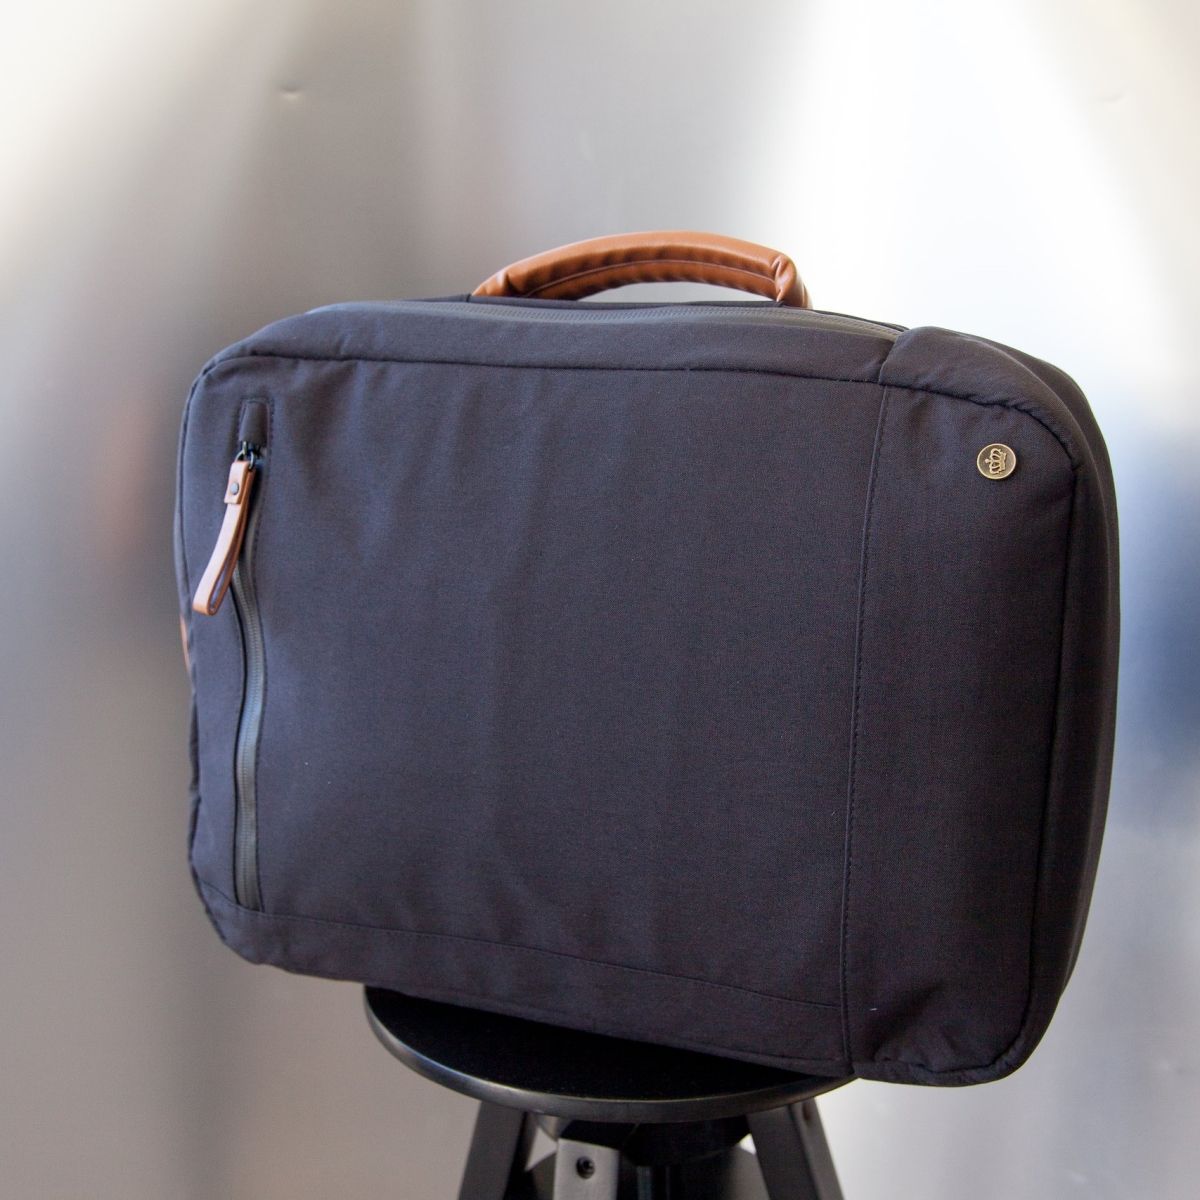 PKG Backpack - Brief Bag - Black